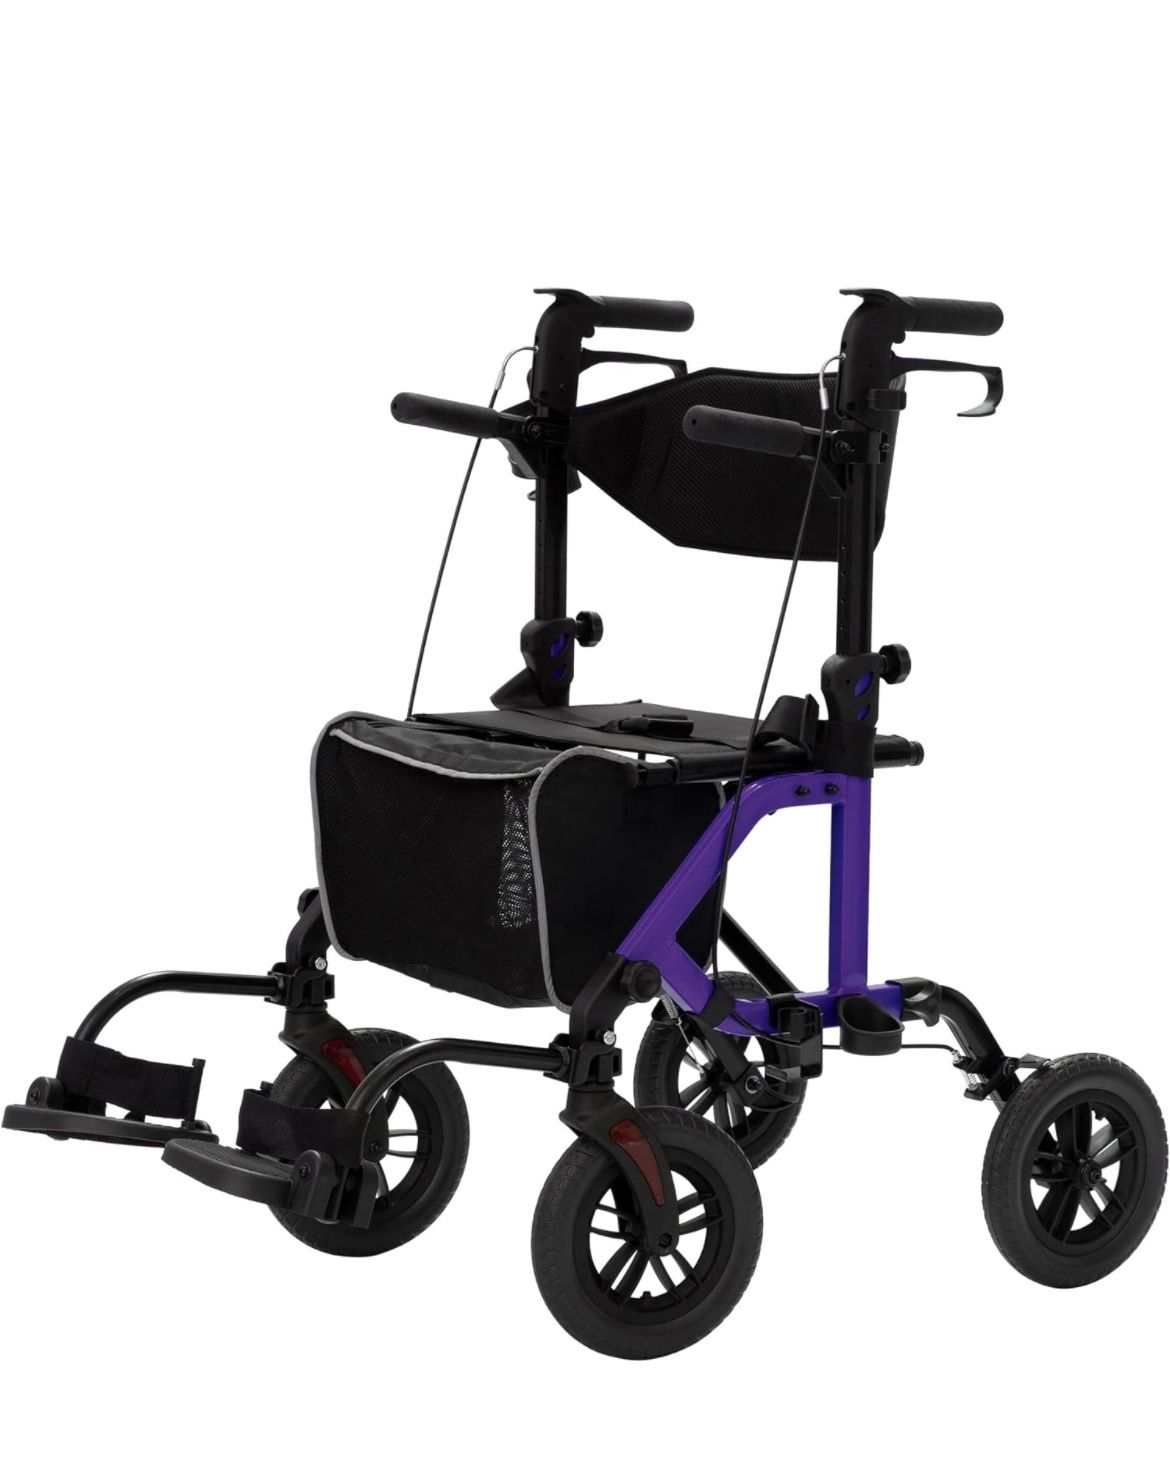 ELENKER All-Terrain 2 in 1 Rollator Walker & Transport Chair, Folding Wheelchair with 10” Non-Pneumatic Wheels for Seniors, Reversible Backrest & Deta